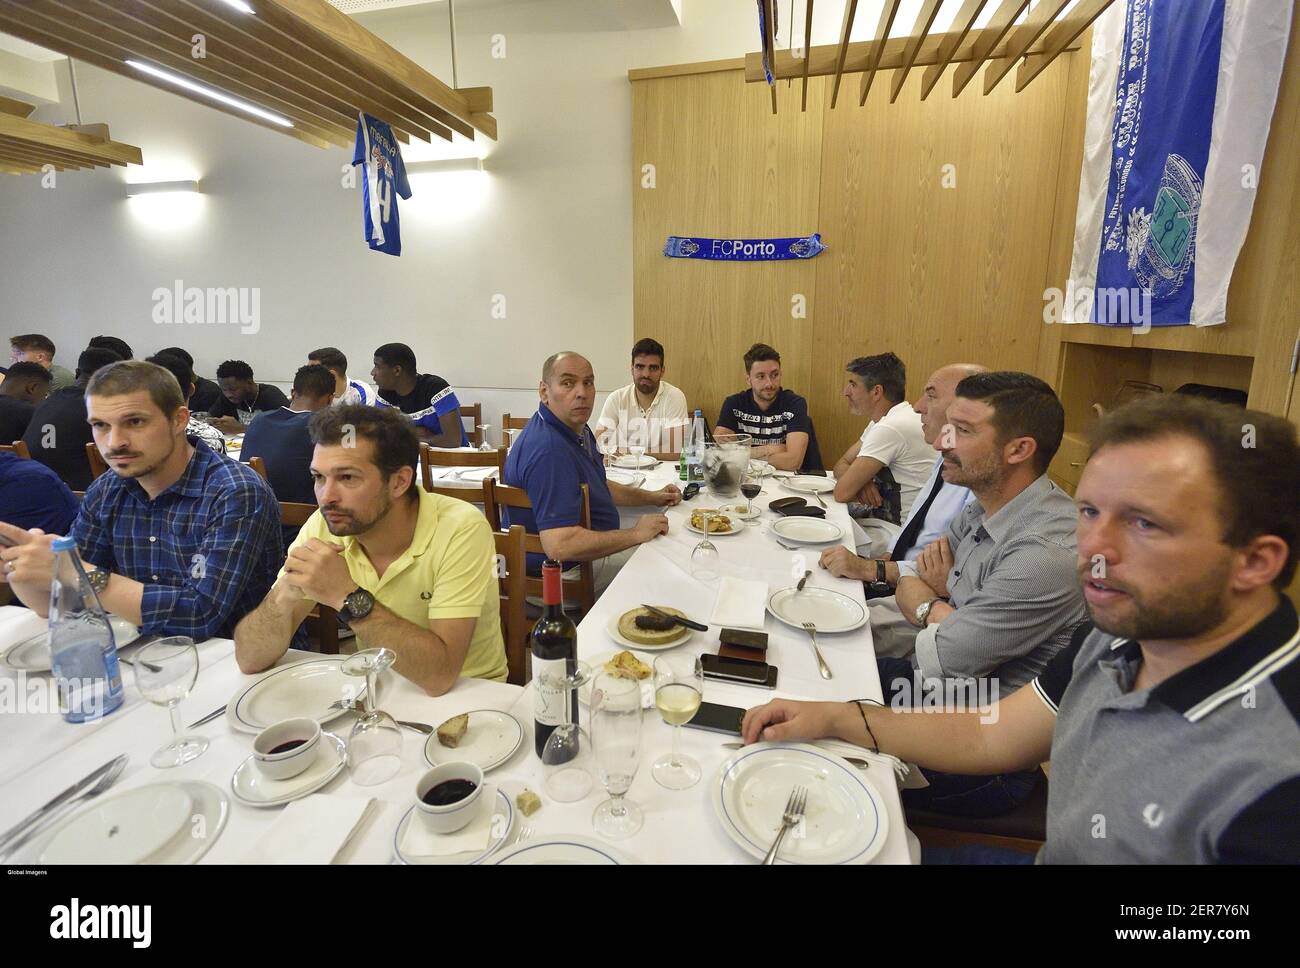 Porto,16/05/2018- Almoço de confraternização da equipa B de futebol do FC  Porto no restaurante Antunes, na rua de Bonjardim, no Porto.  (Pedranadeirdeiro/Global Imagens Stock Photo - Alamy